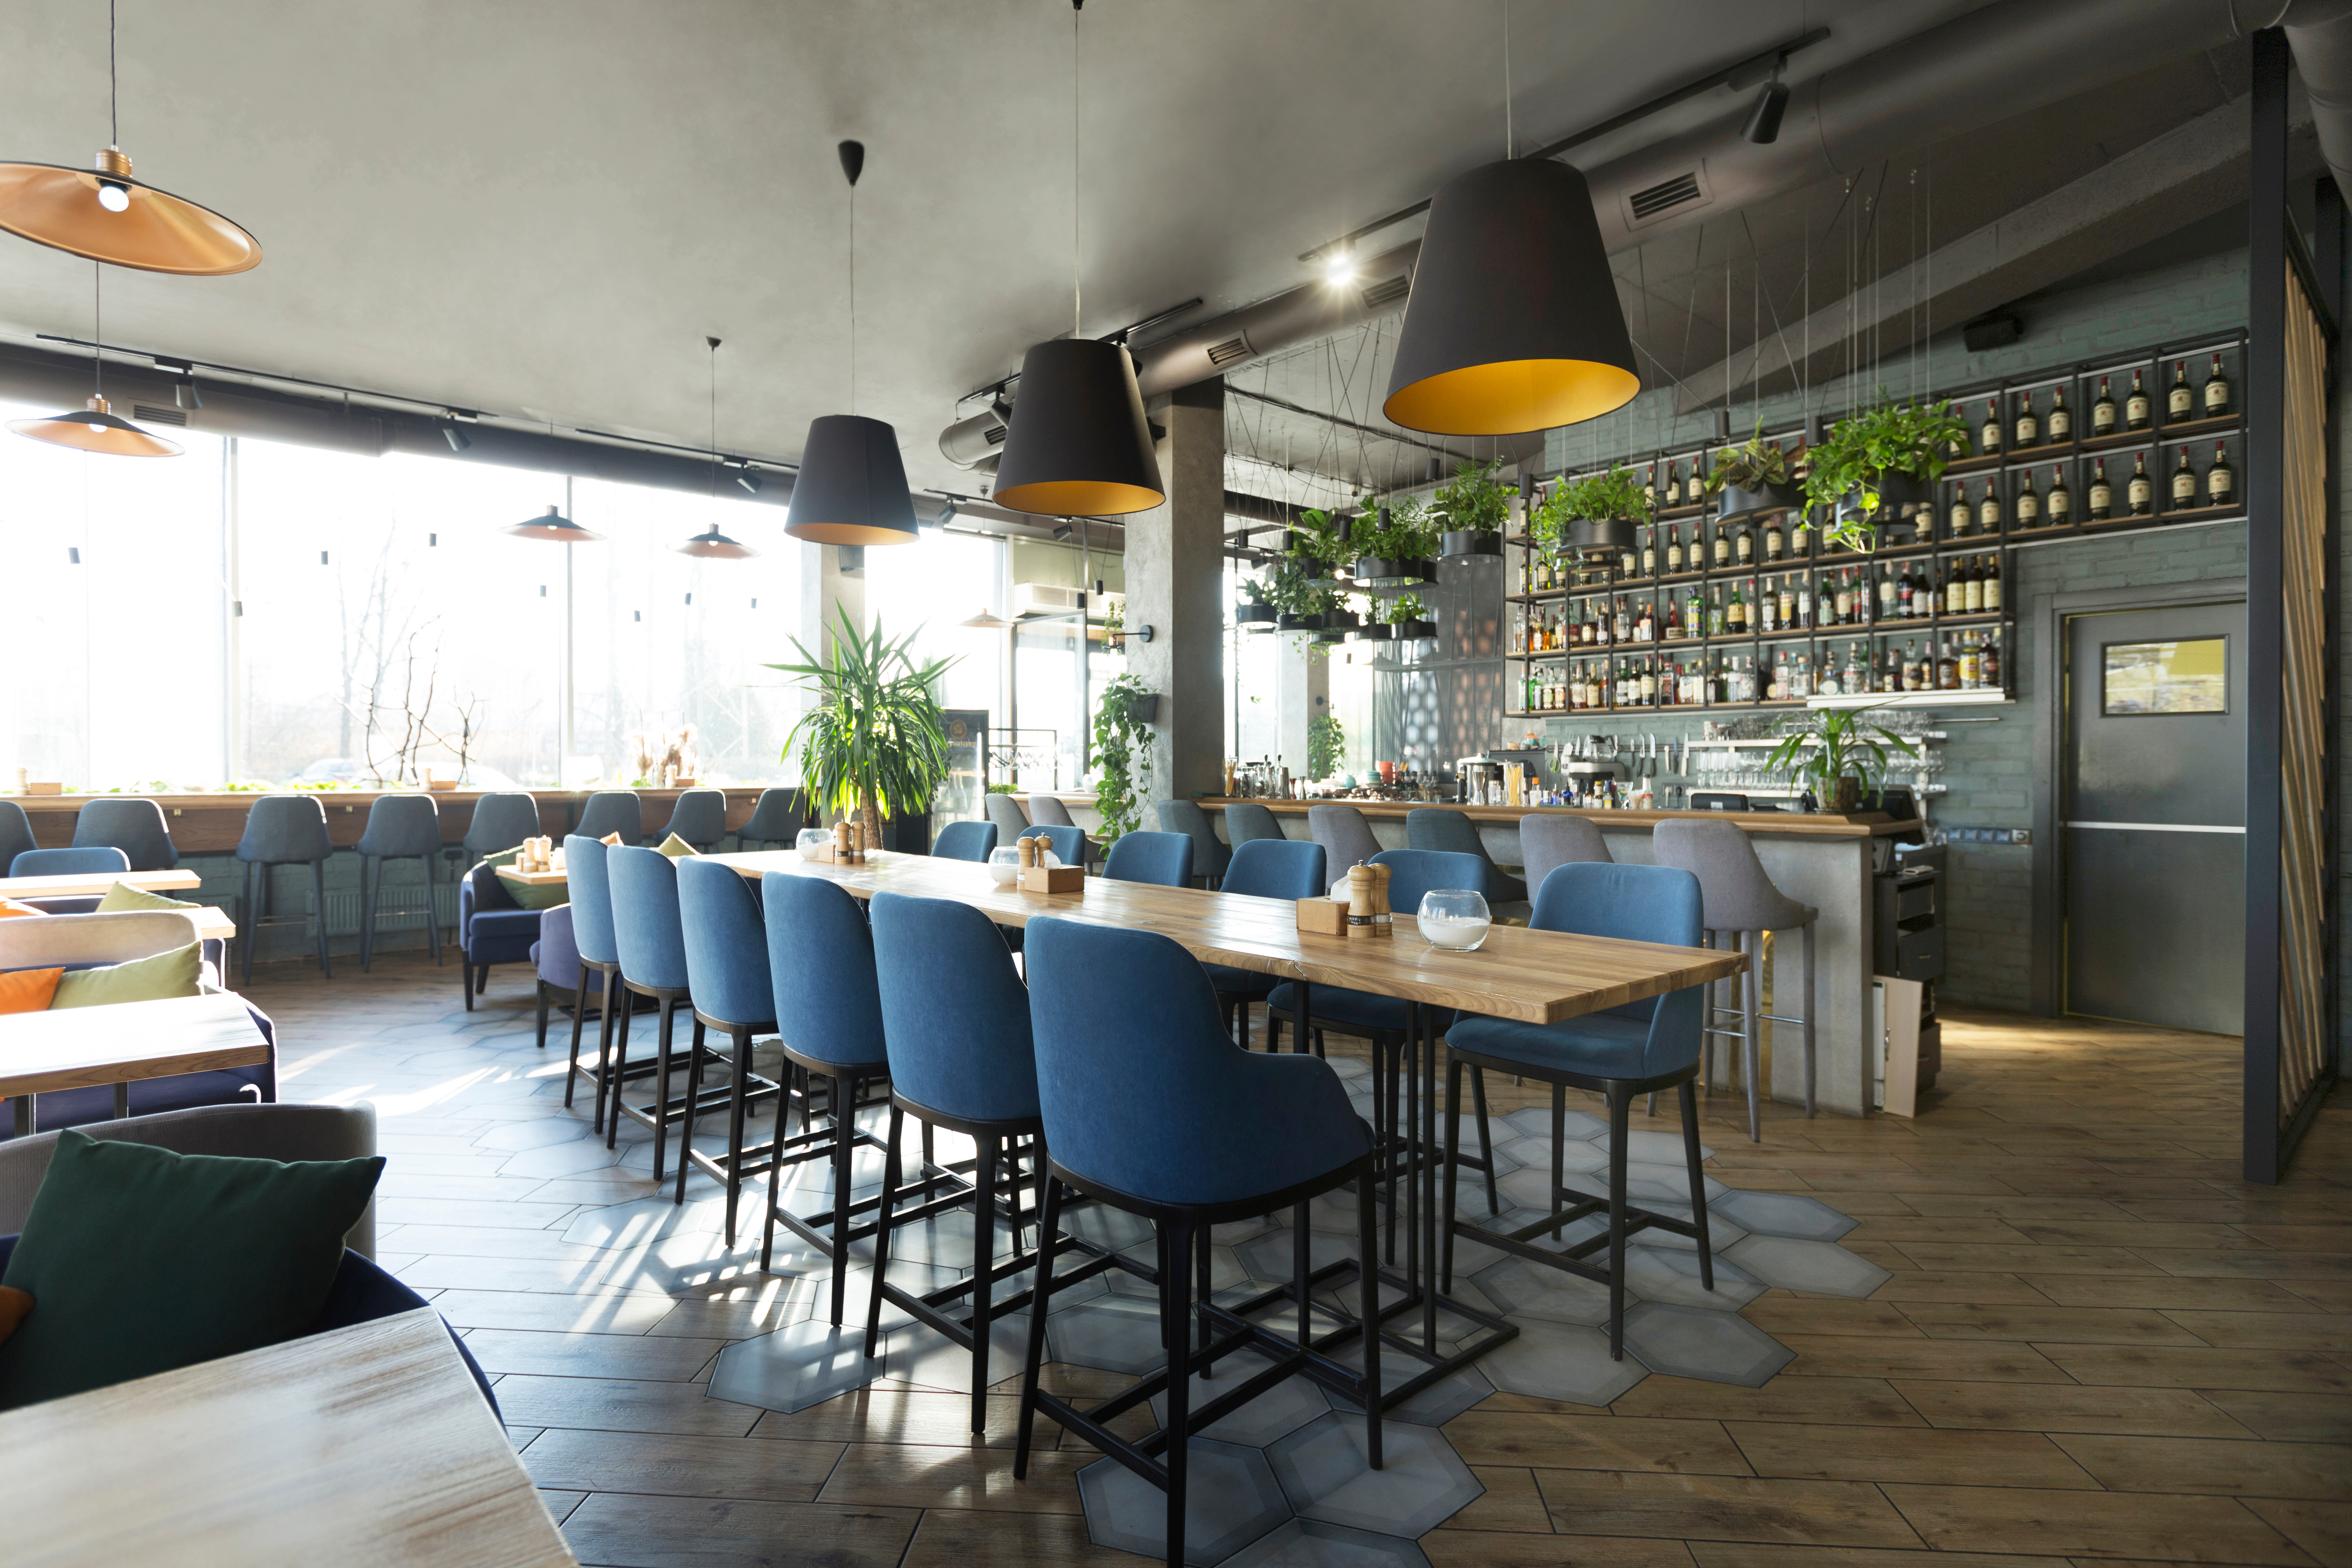 Elegante interior de restaurante para cenar y descansar. | Fuente: Shutterstock